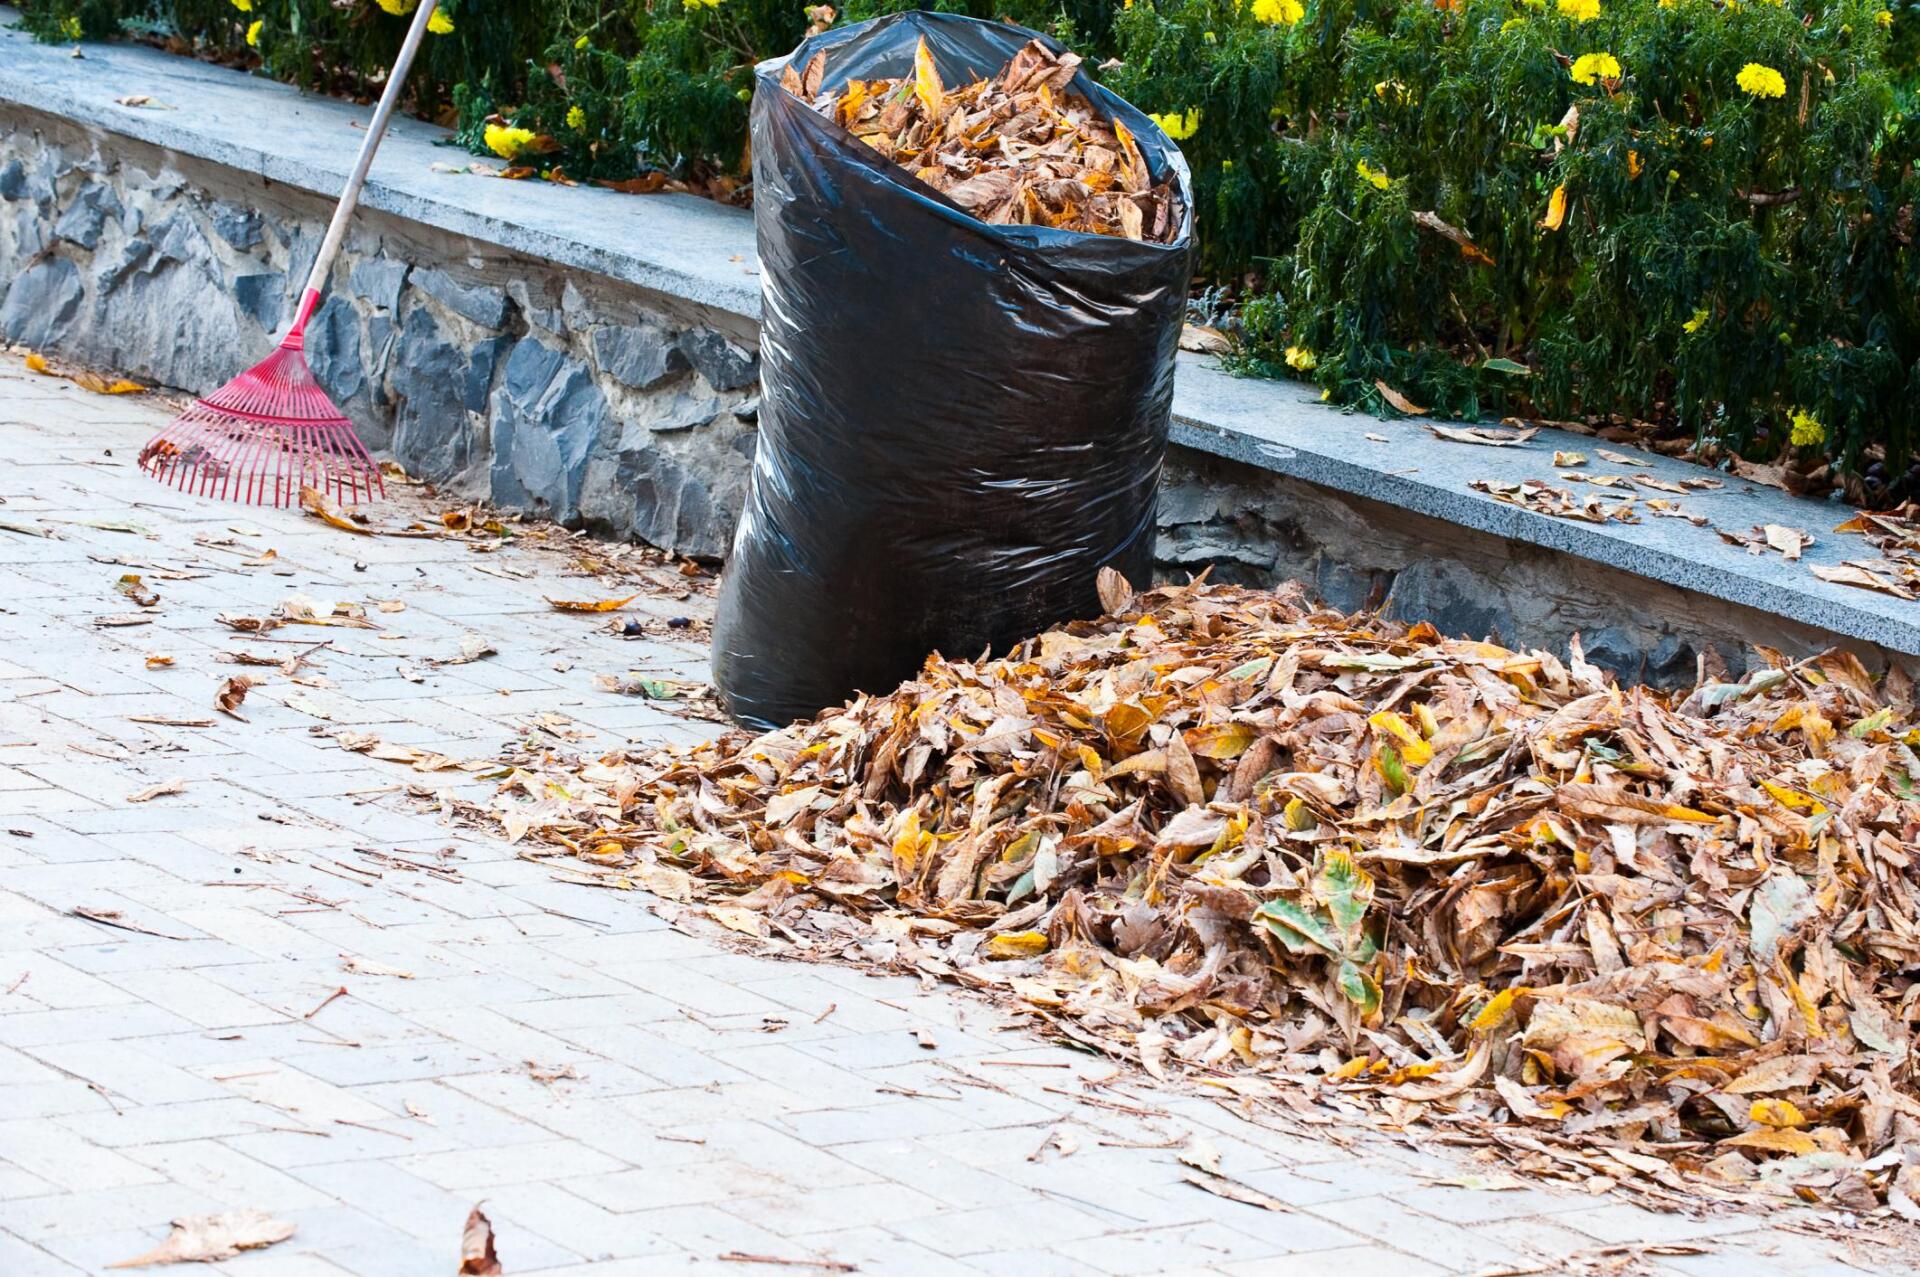 dried leaves in the black garbagebag